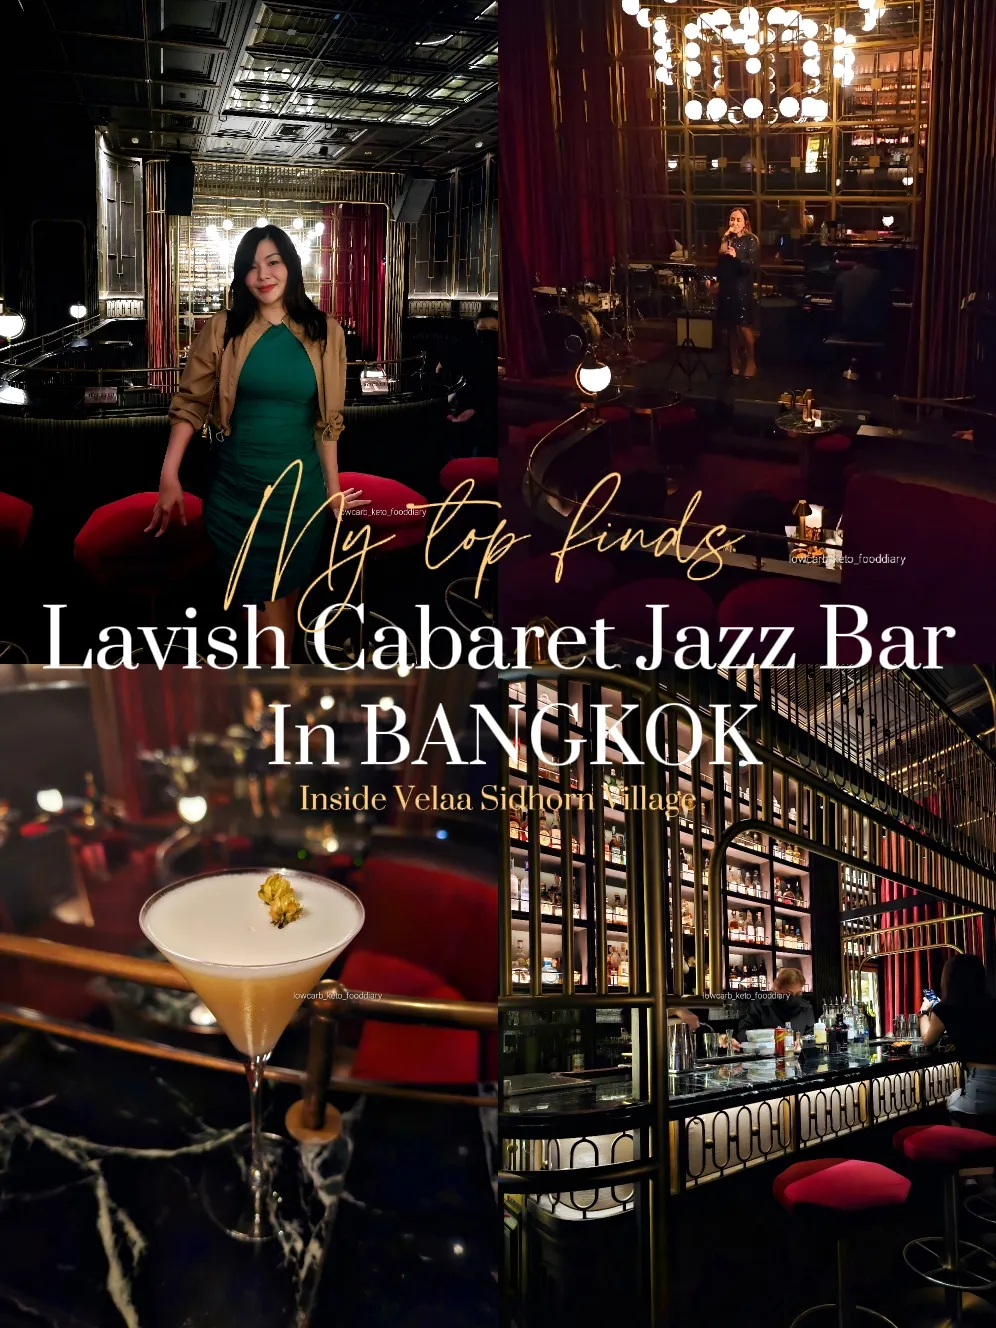 Lavish Cabaret Jazz Bar in BANGKOK's images(0)